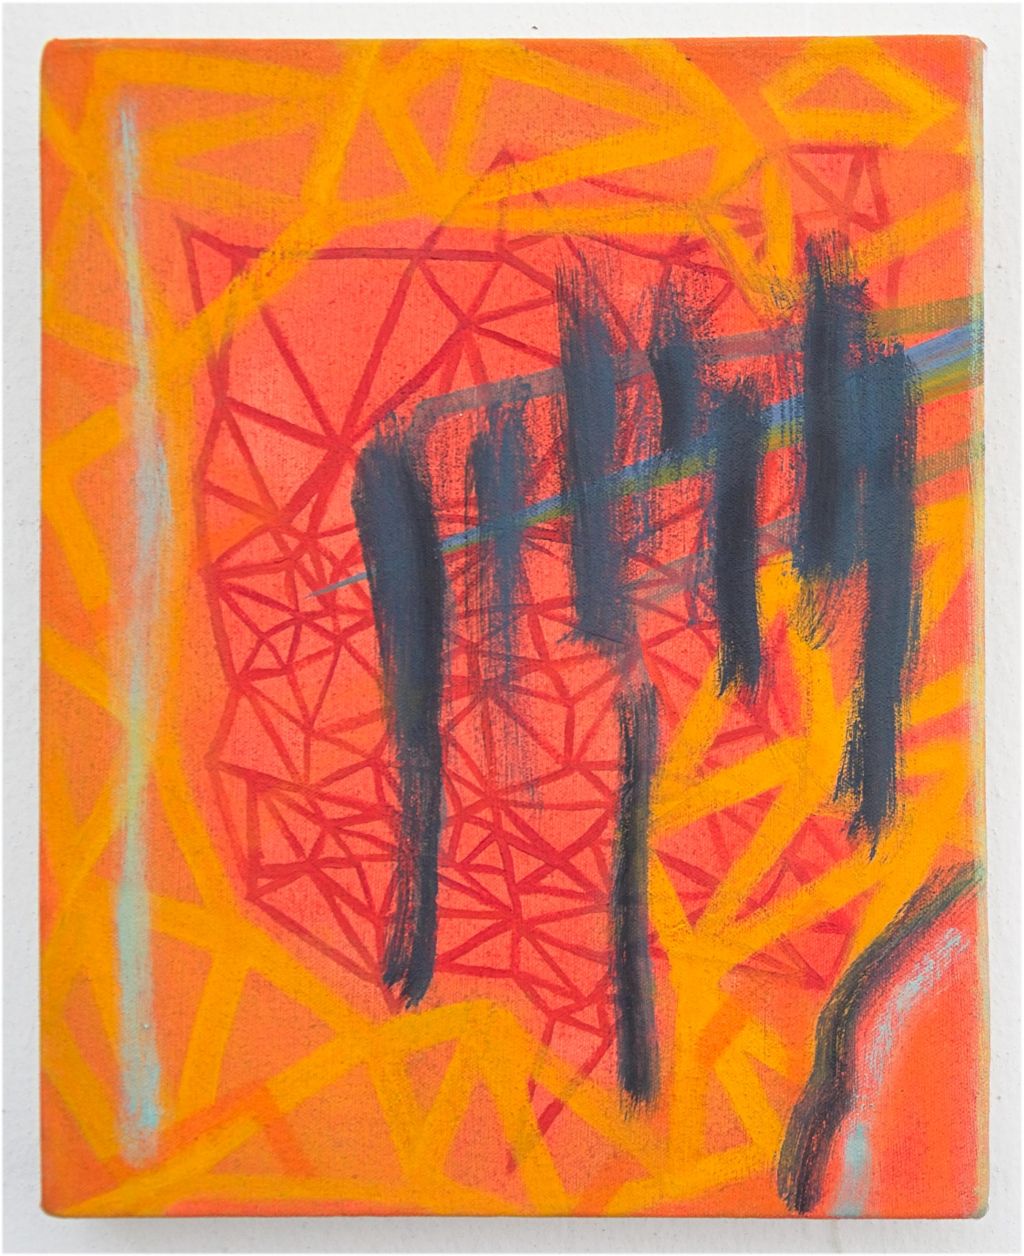 Cressida Haughten bringt Farbe in ihre Malerei - Arbeit in Orangetönen